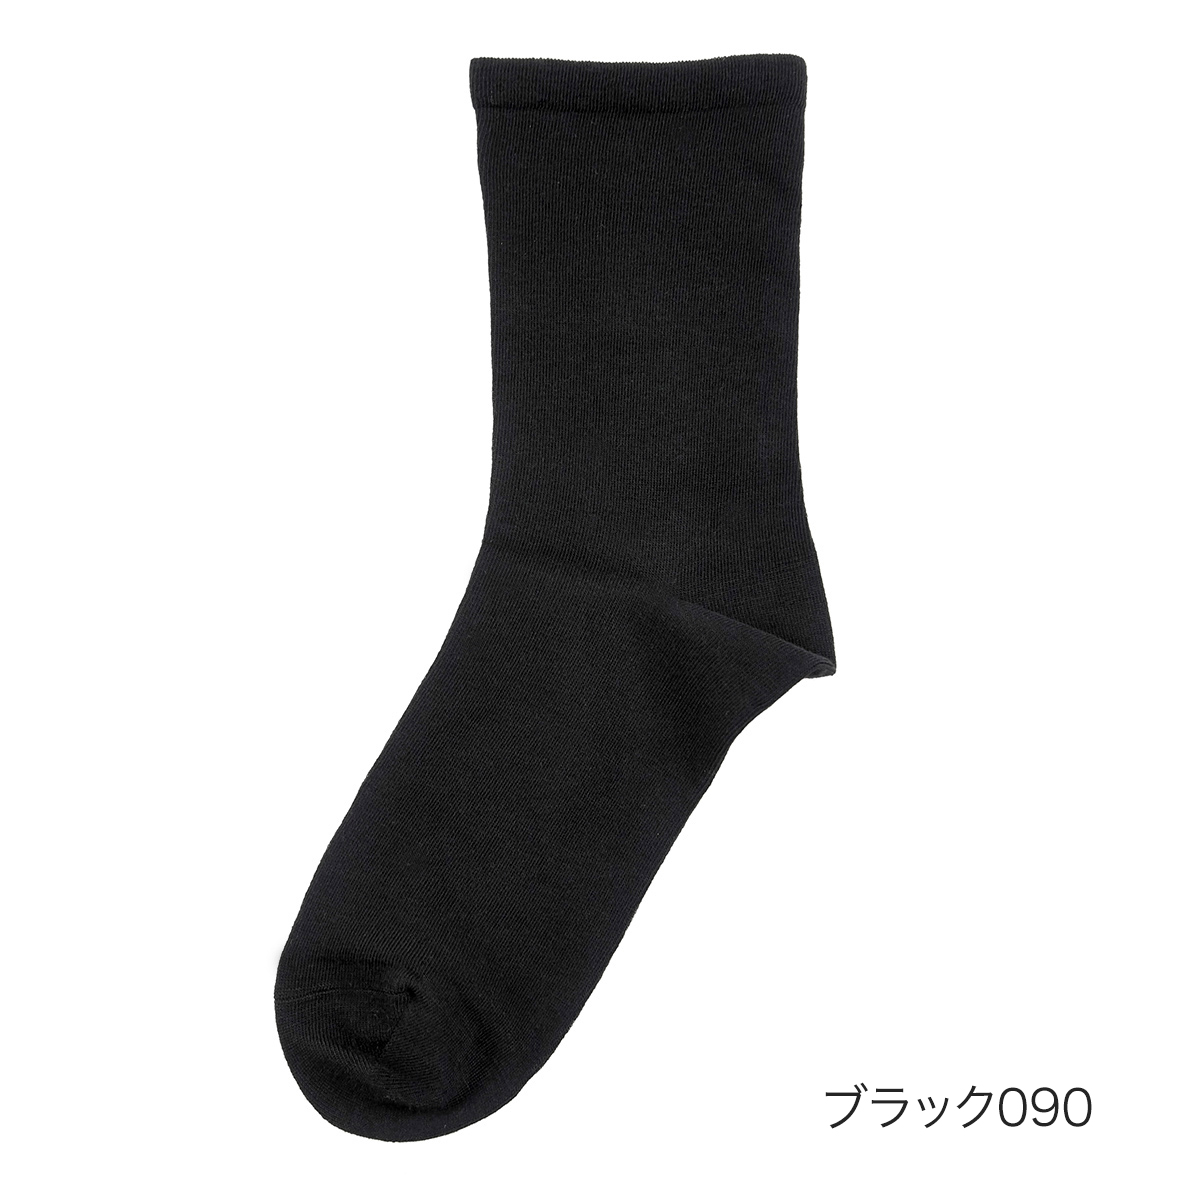 fukuske FUN(フクスケファン) ： comfortable socks 無地 ソックス ク...